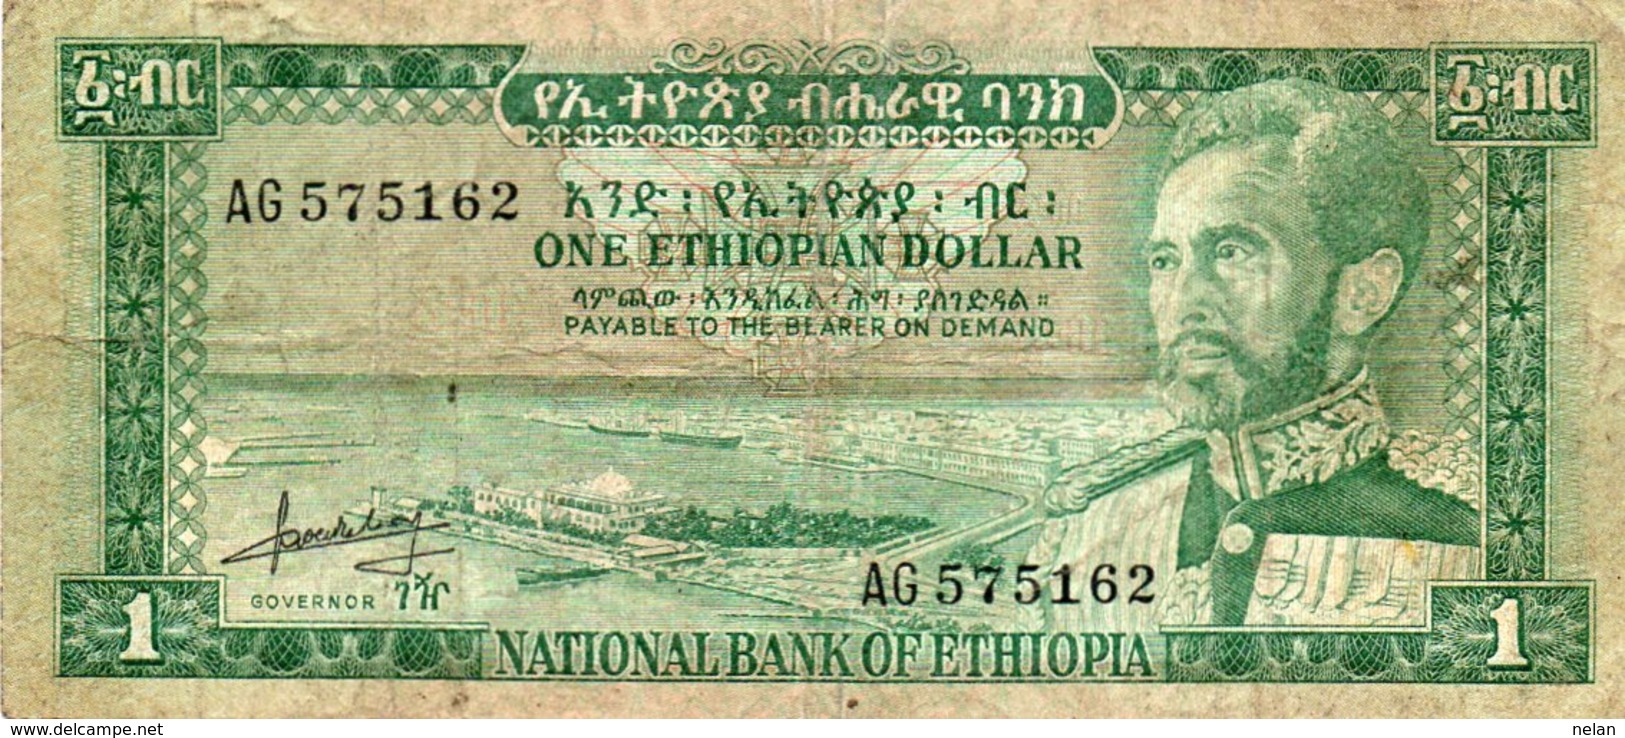 ETHIOPIA 1 DOLLAR 1966 P-25 - Ethiopie